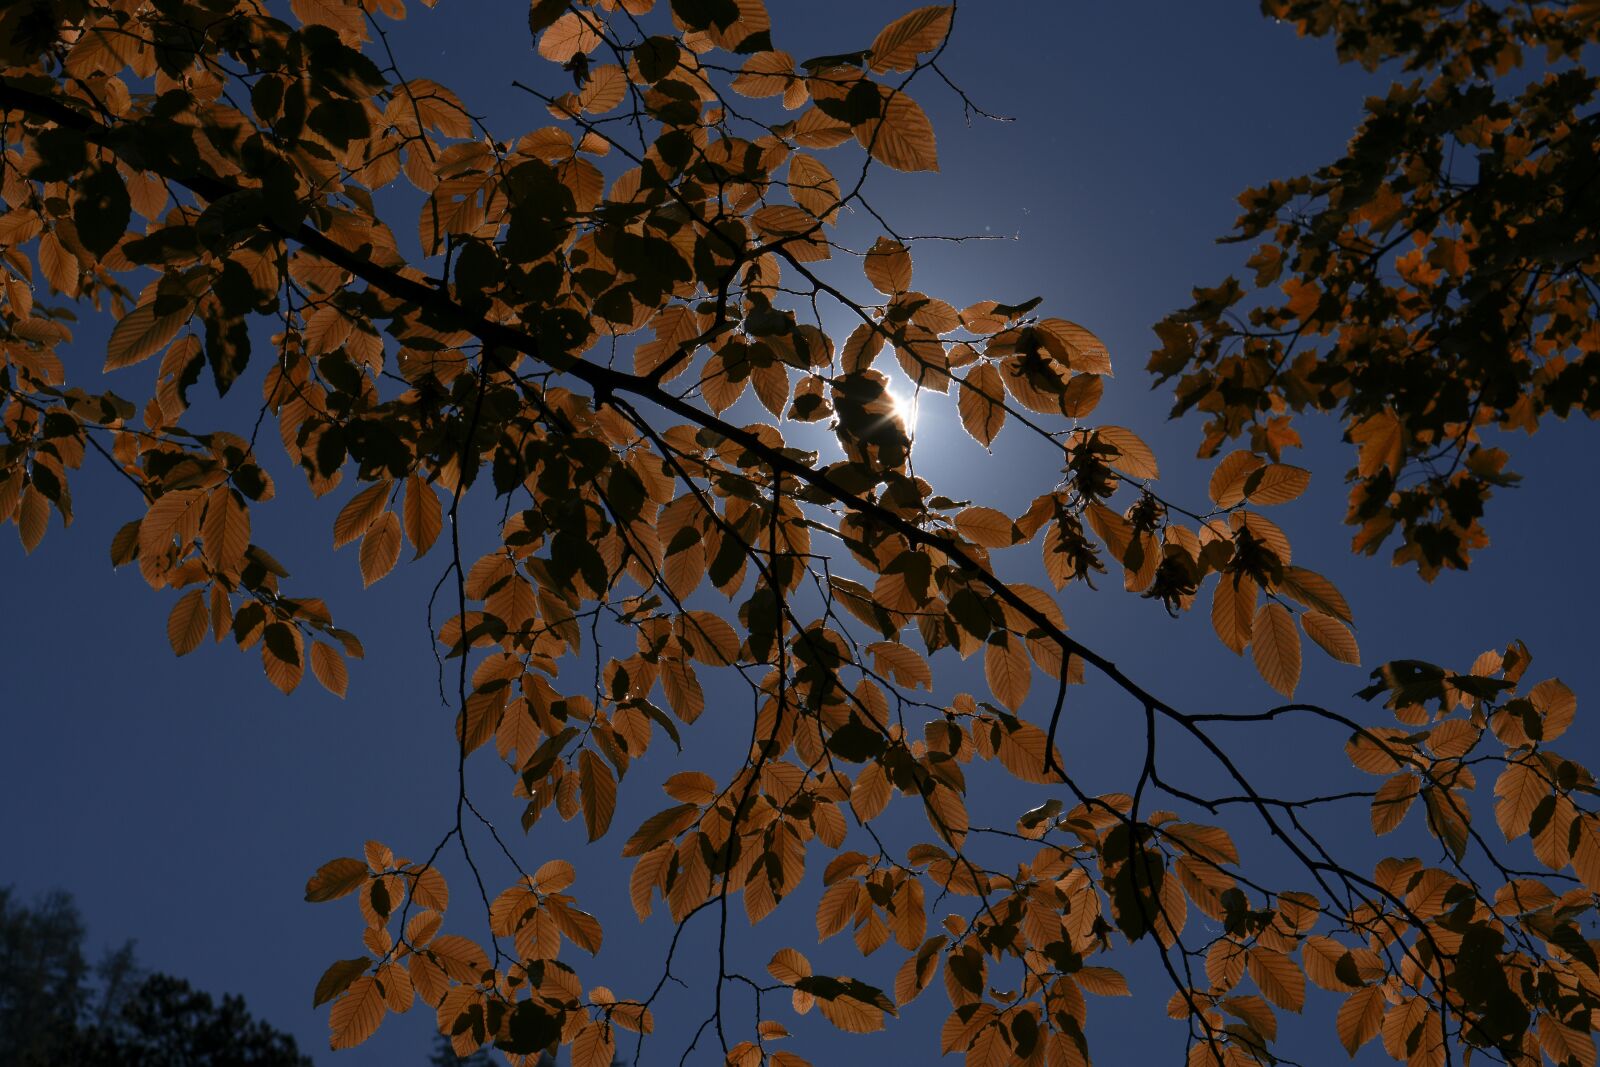 Sony a6000 sample photo. Leaves, sun, autumn photography